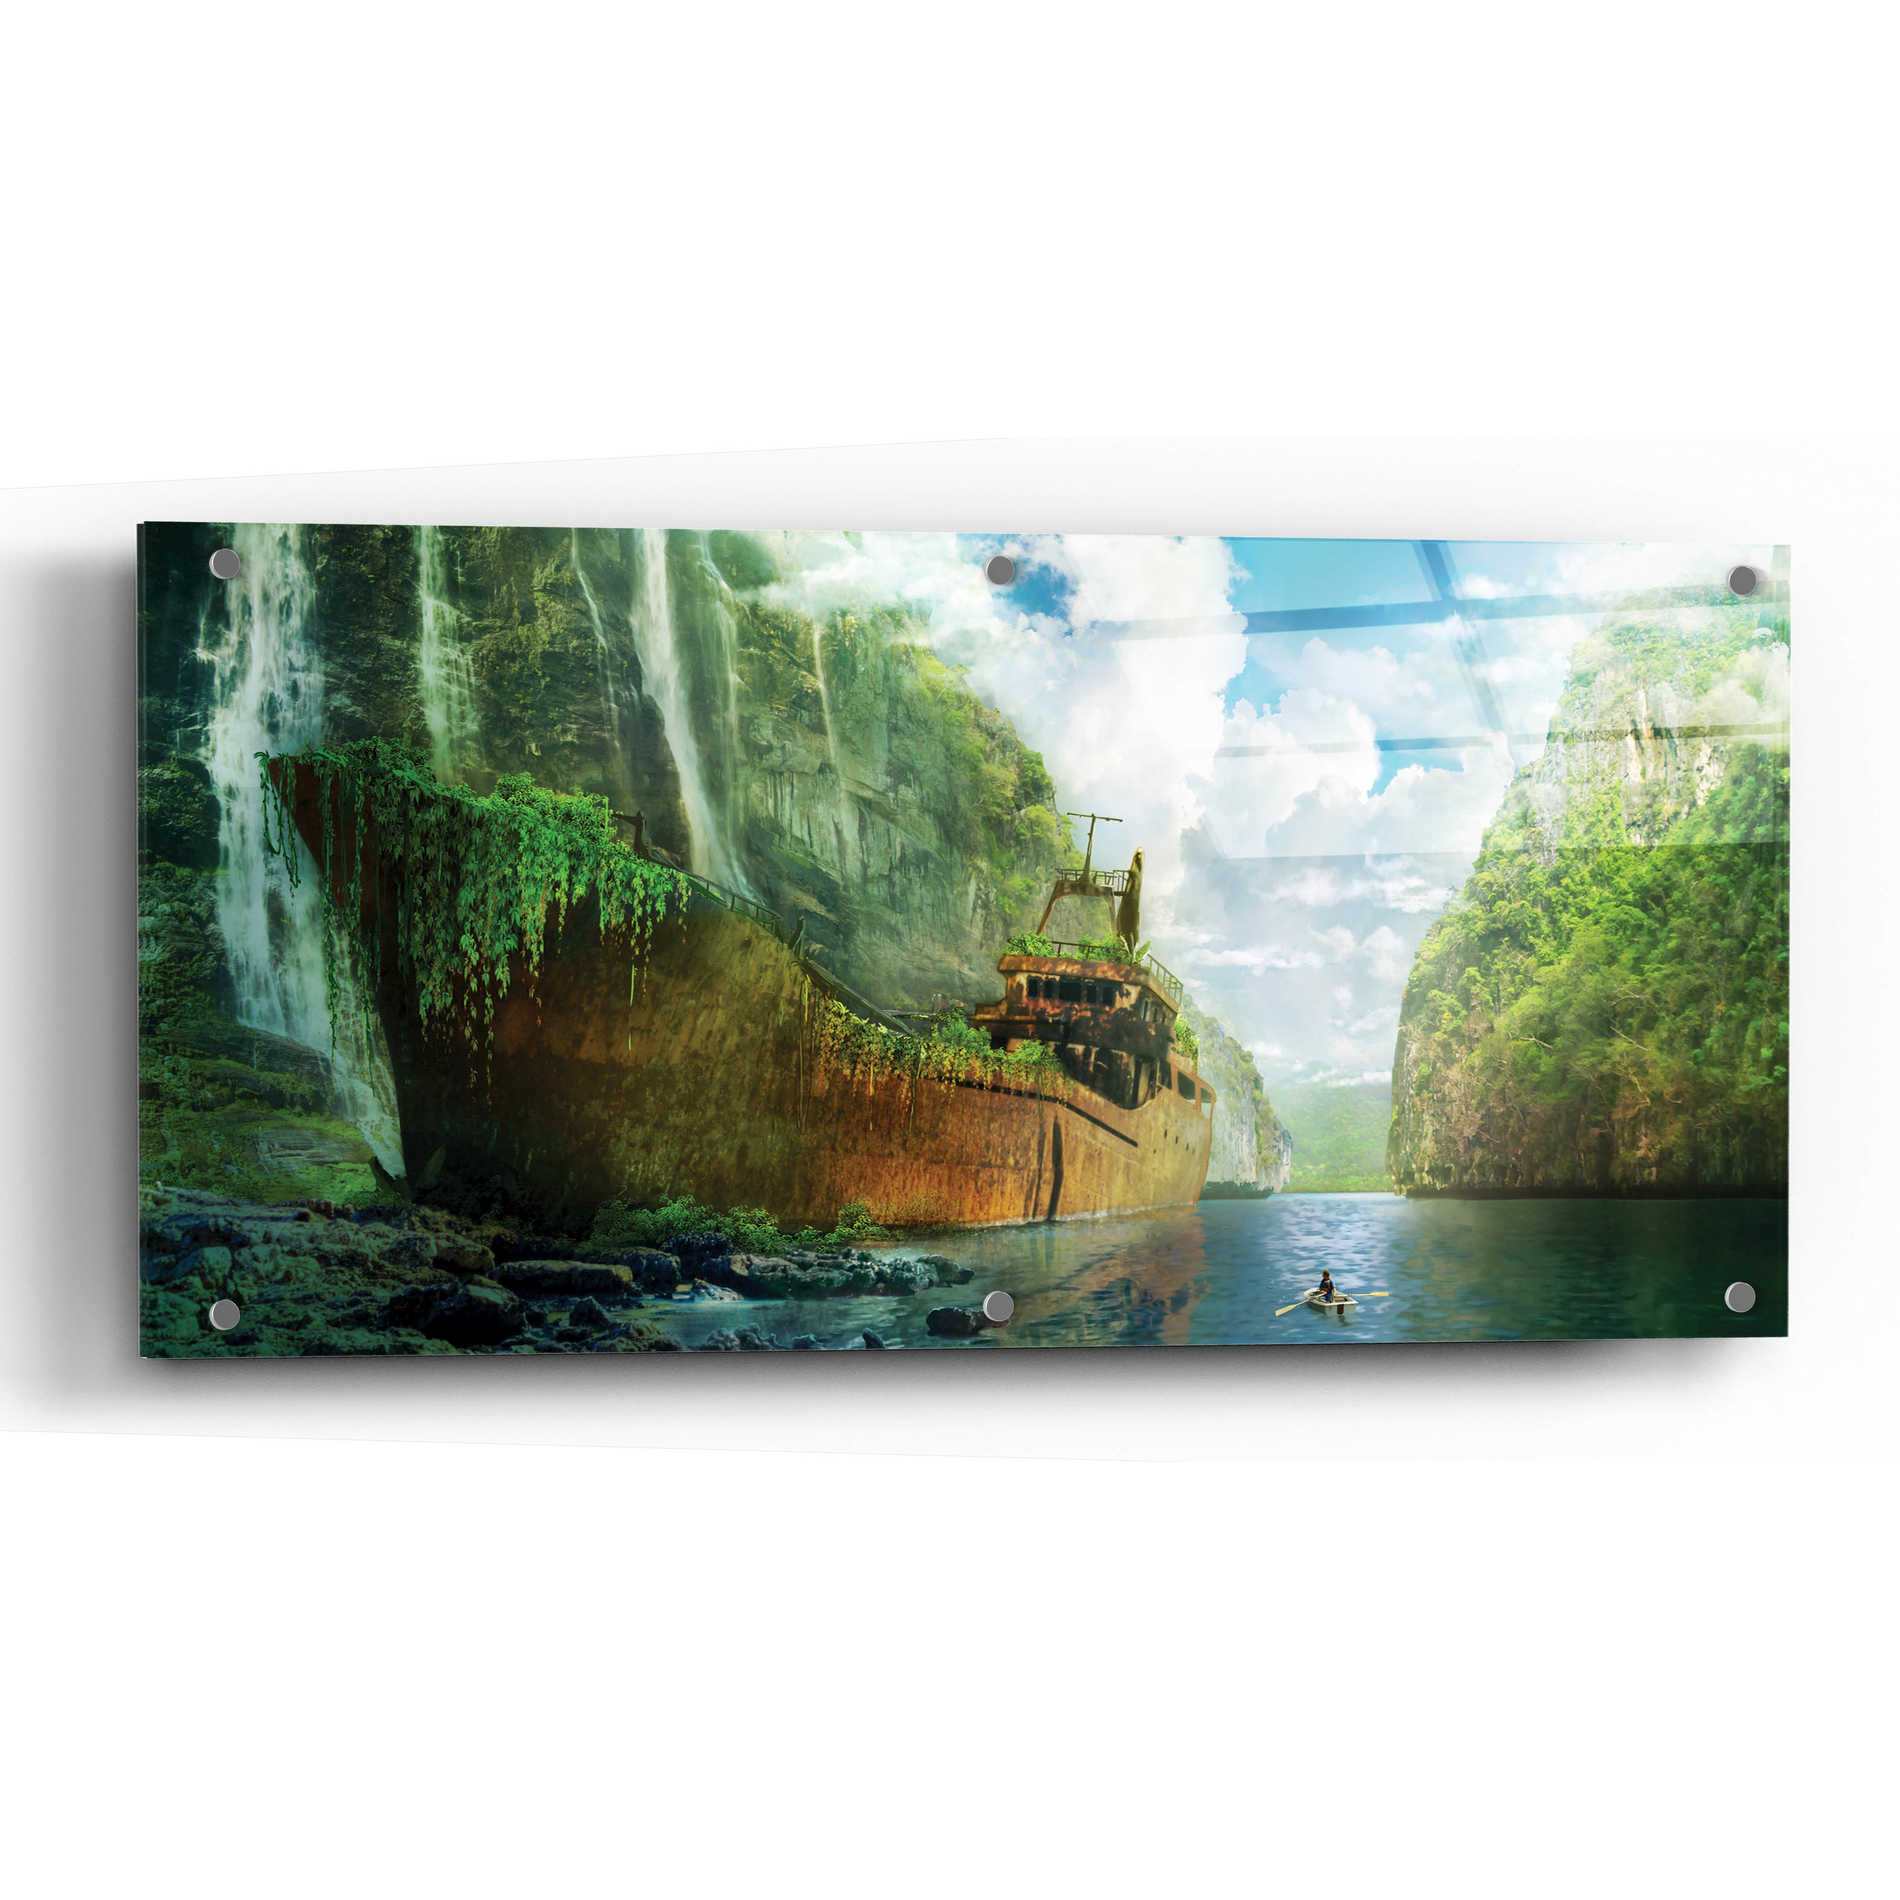 Epic Art 'Shipwreck' by Jonathan Lam, Acrylic Glass Wall Art,48x24